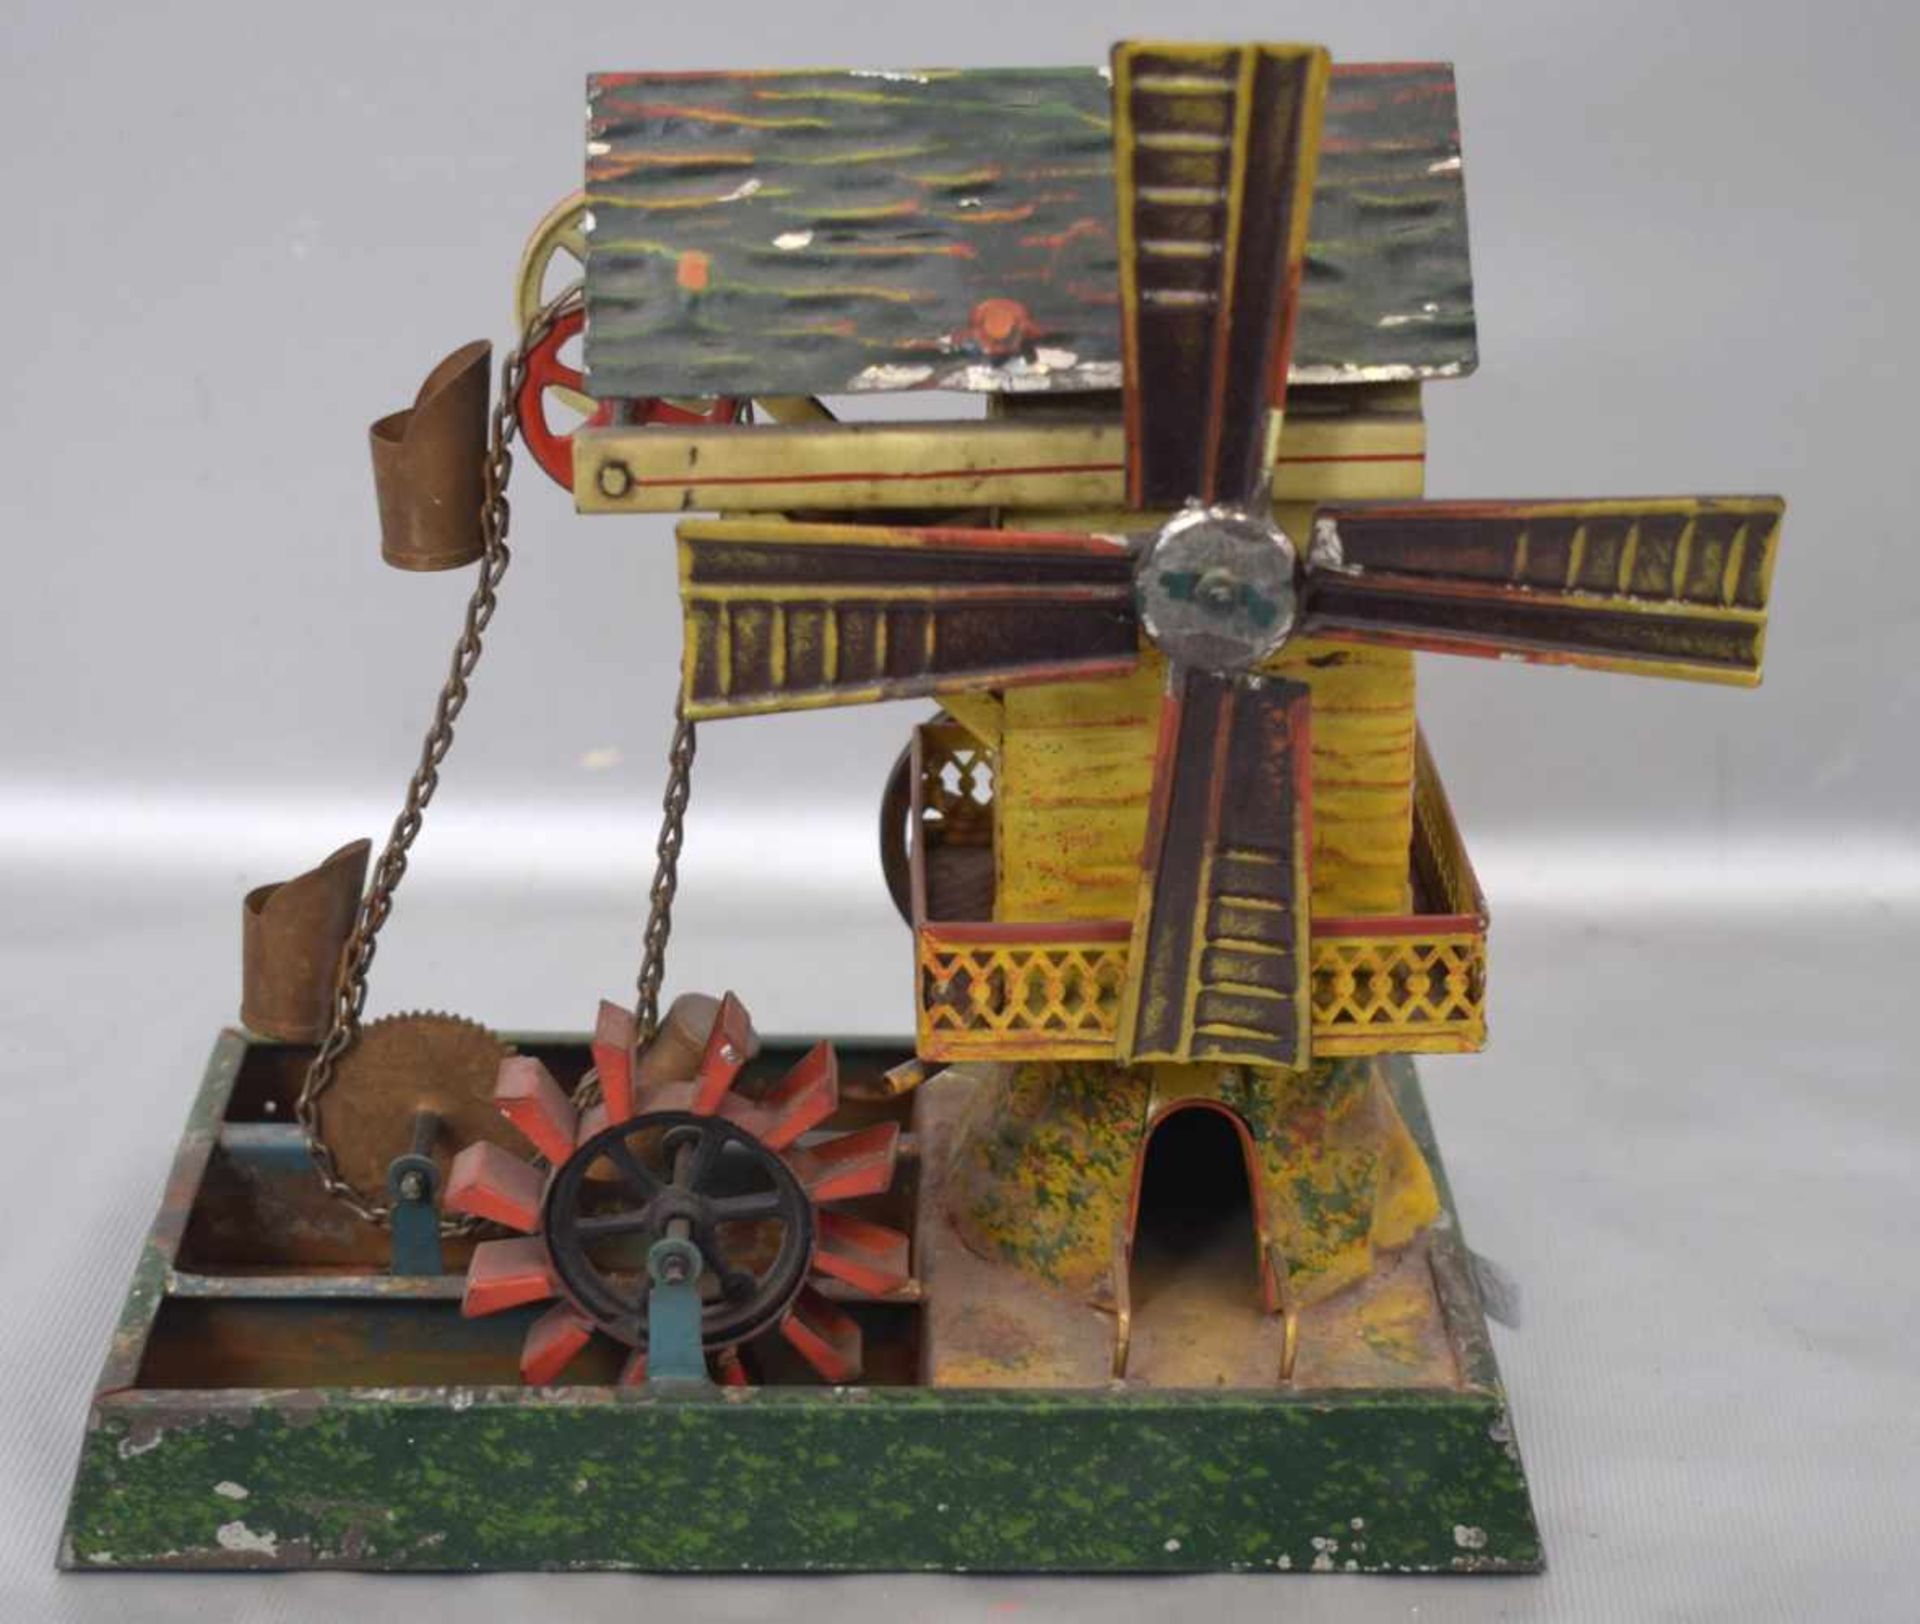 WindmühleBlech, bunt bemalt, Dampfmaschinenantrieb, H 19 cm, L 21 cm